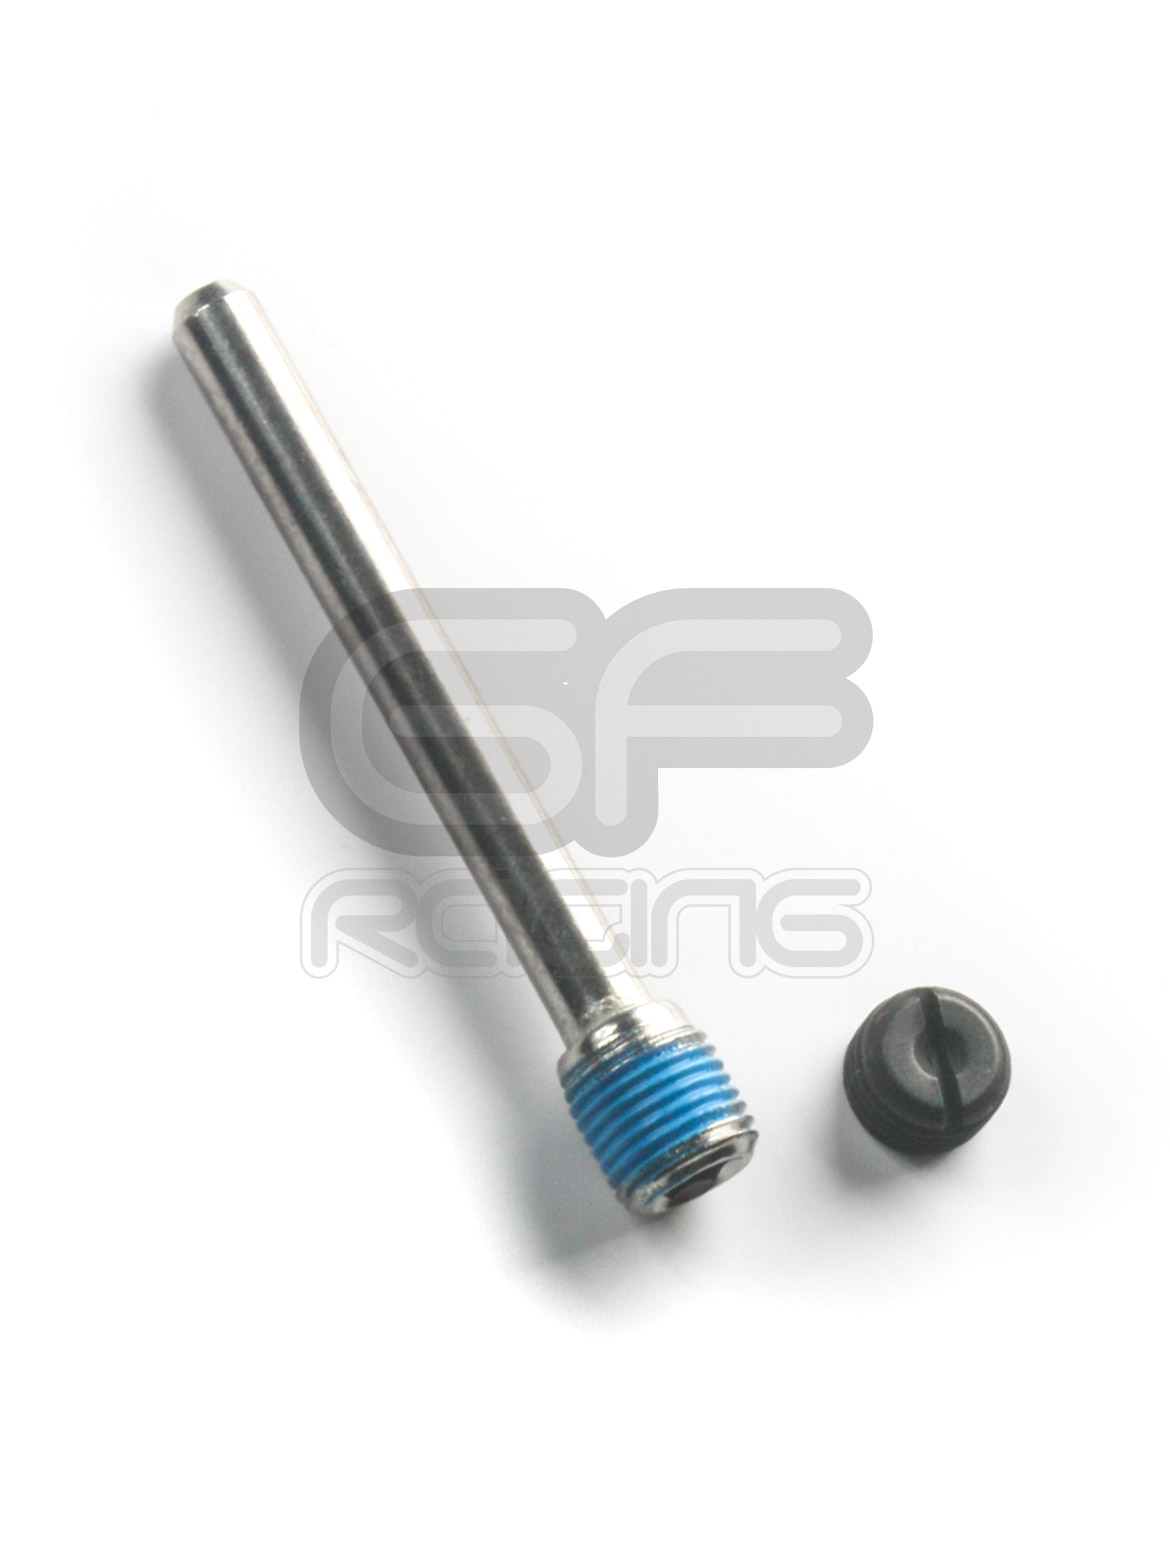 CBR400 Brake Caliper Pin and Plug